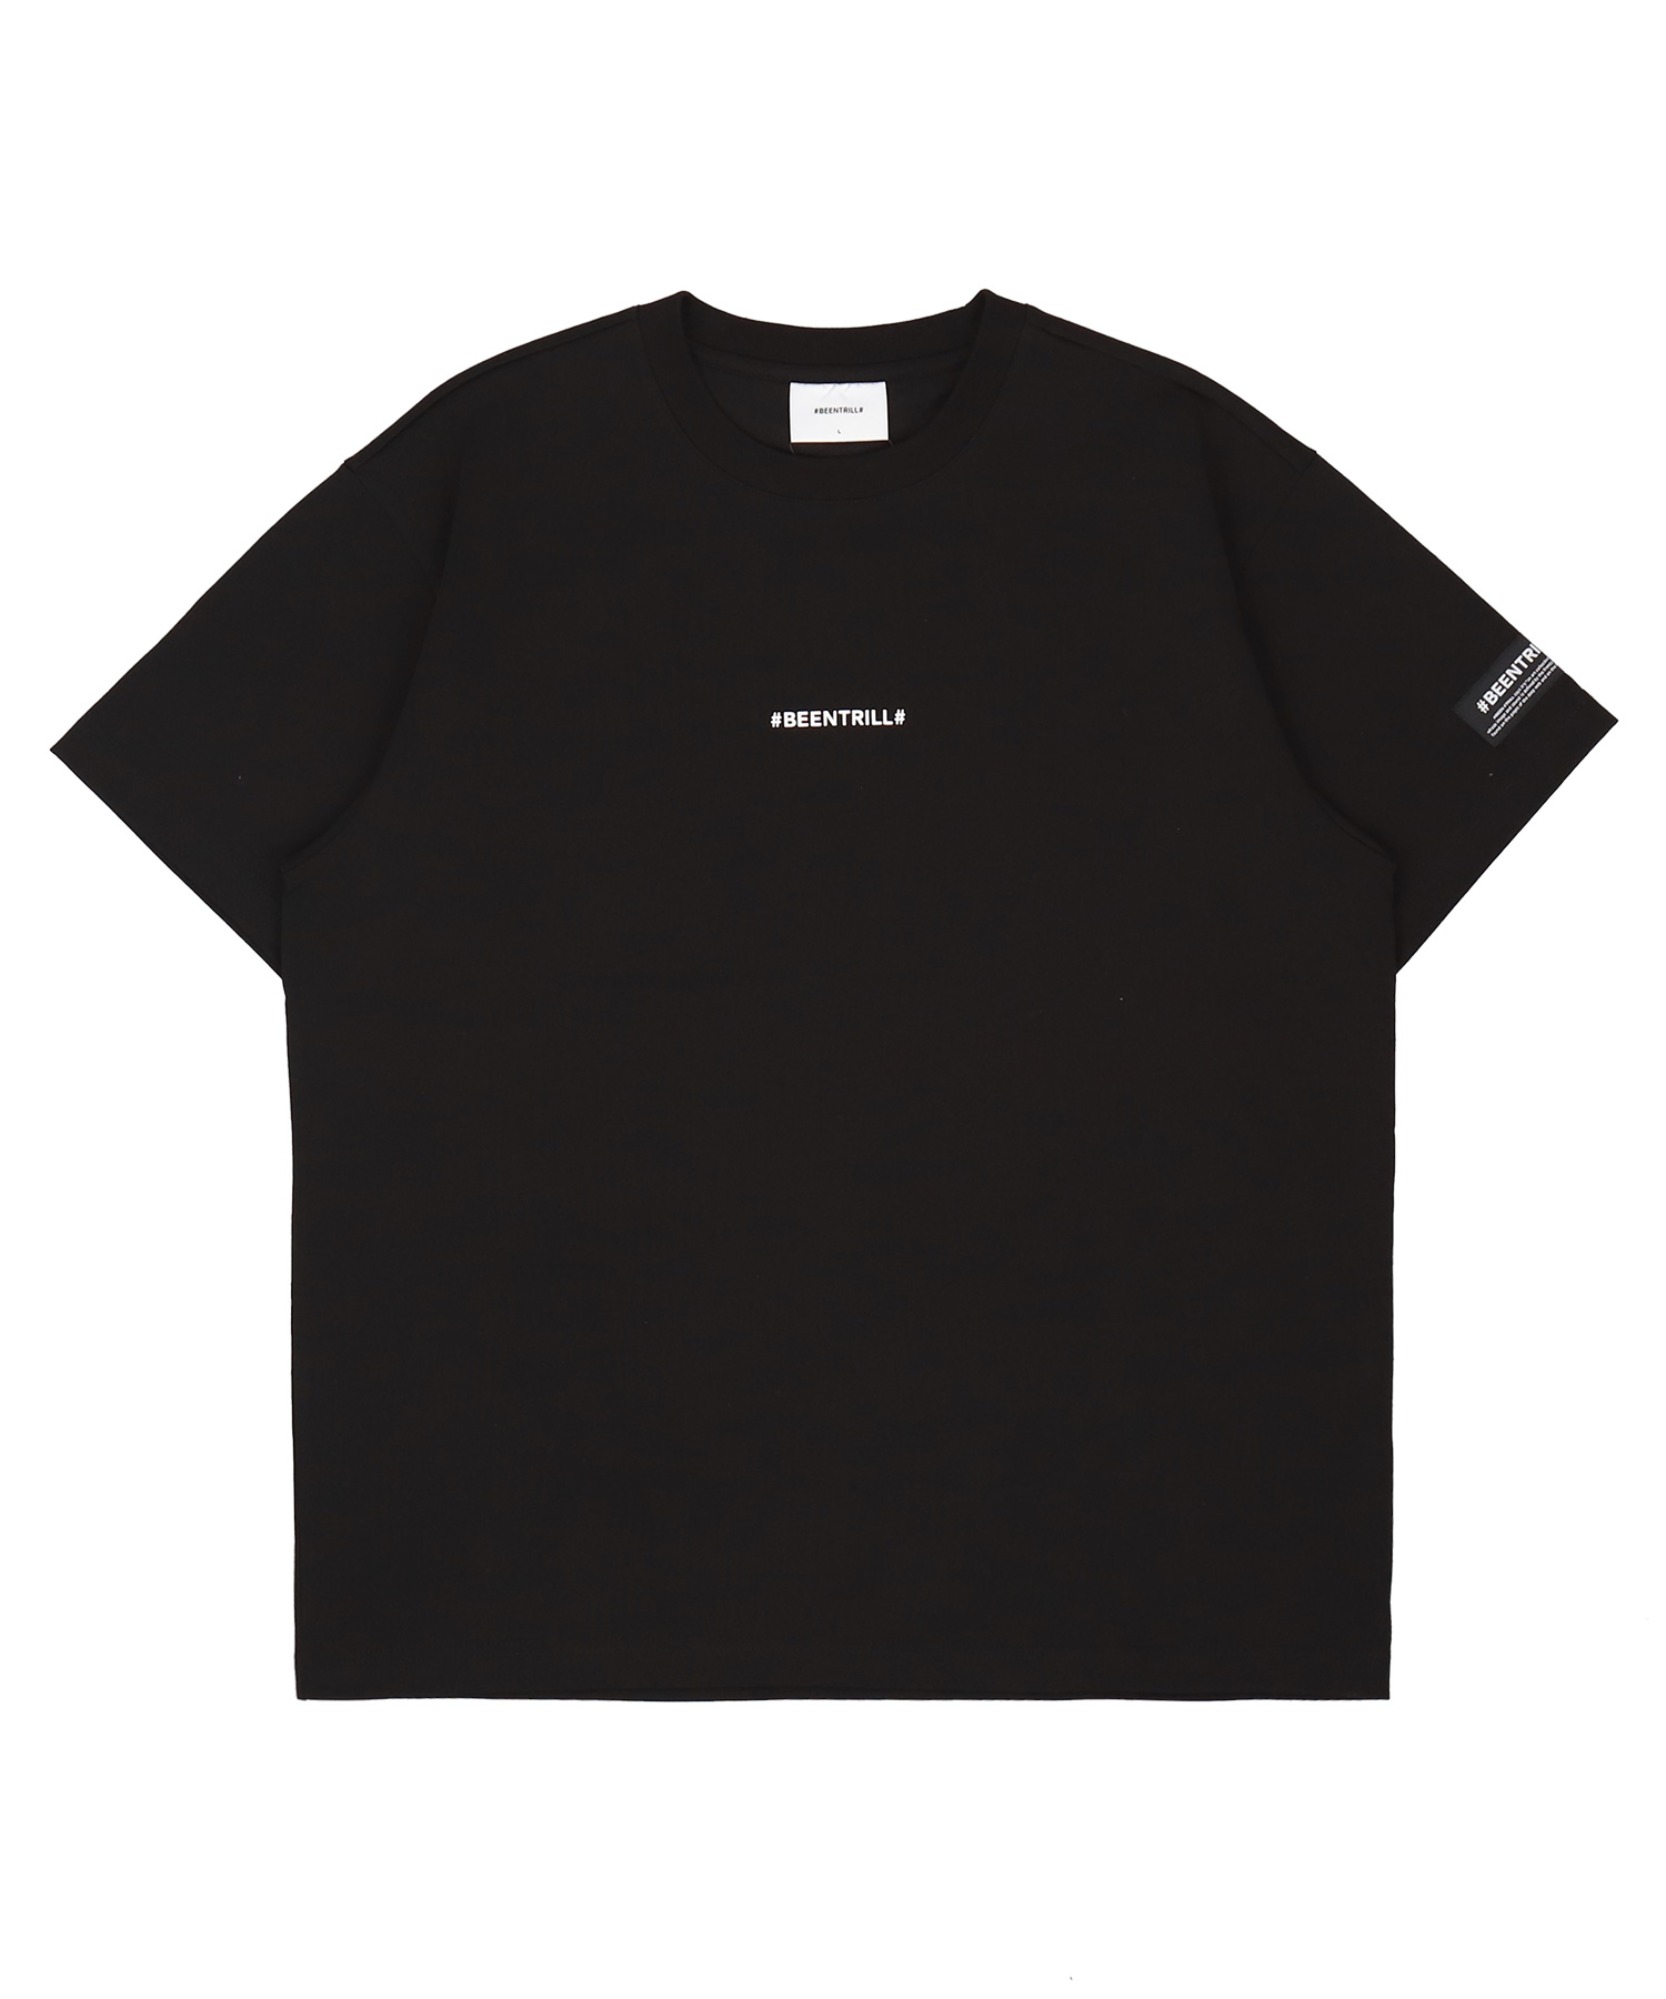 에센셜 컴포트핏 반팔 티셔츠(블랙)